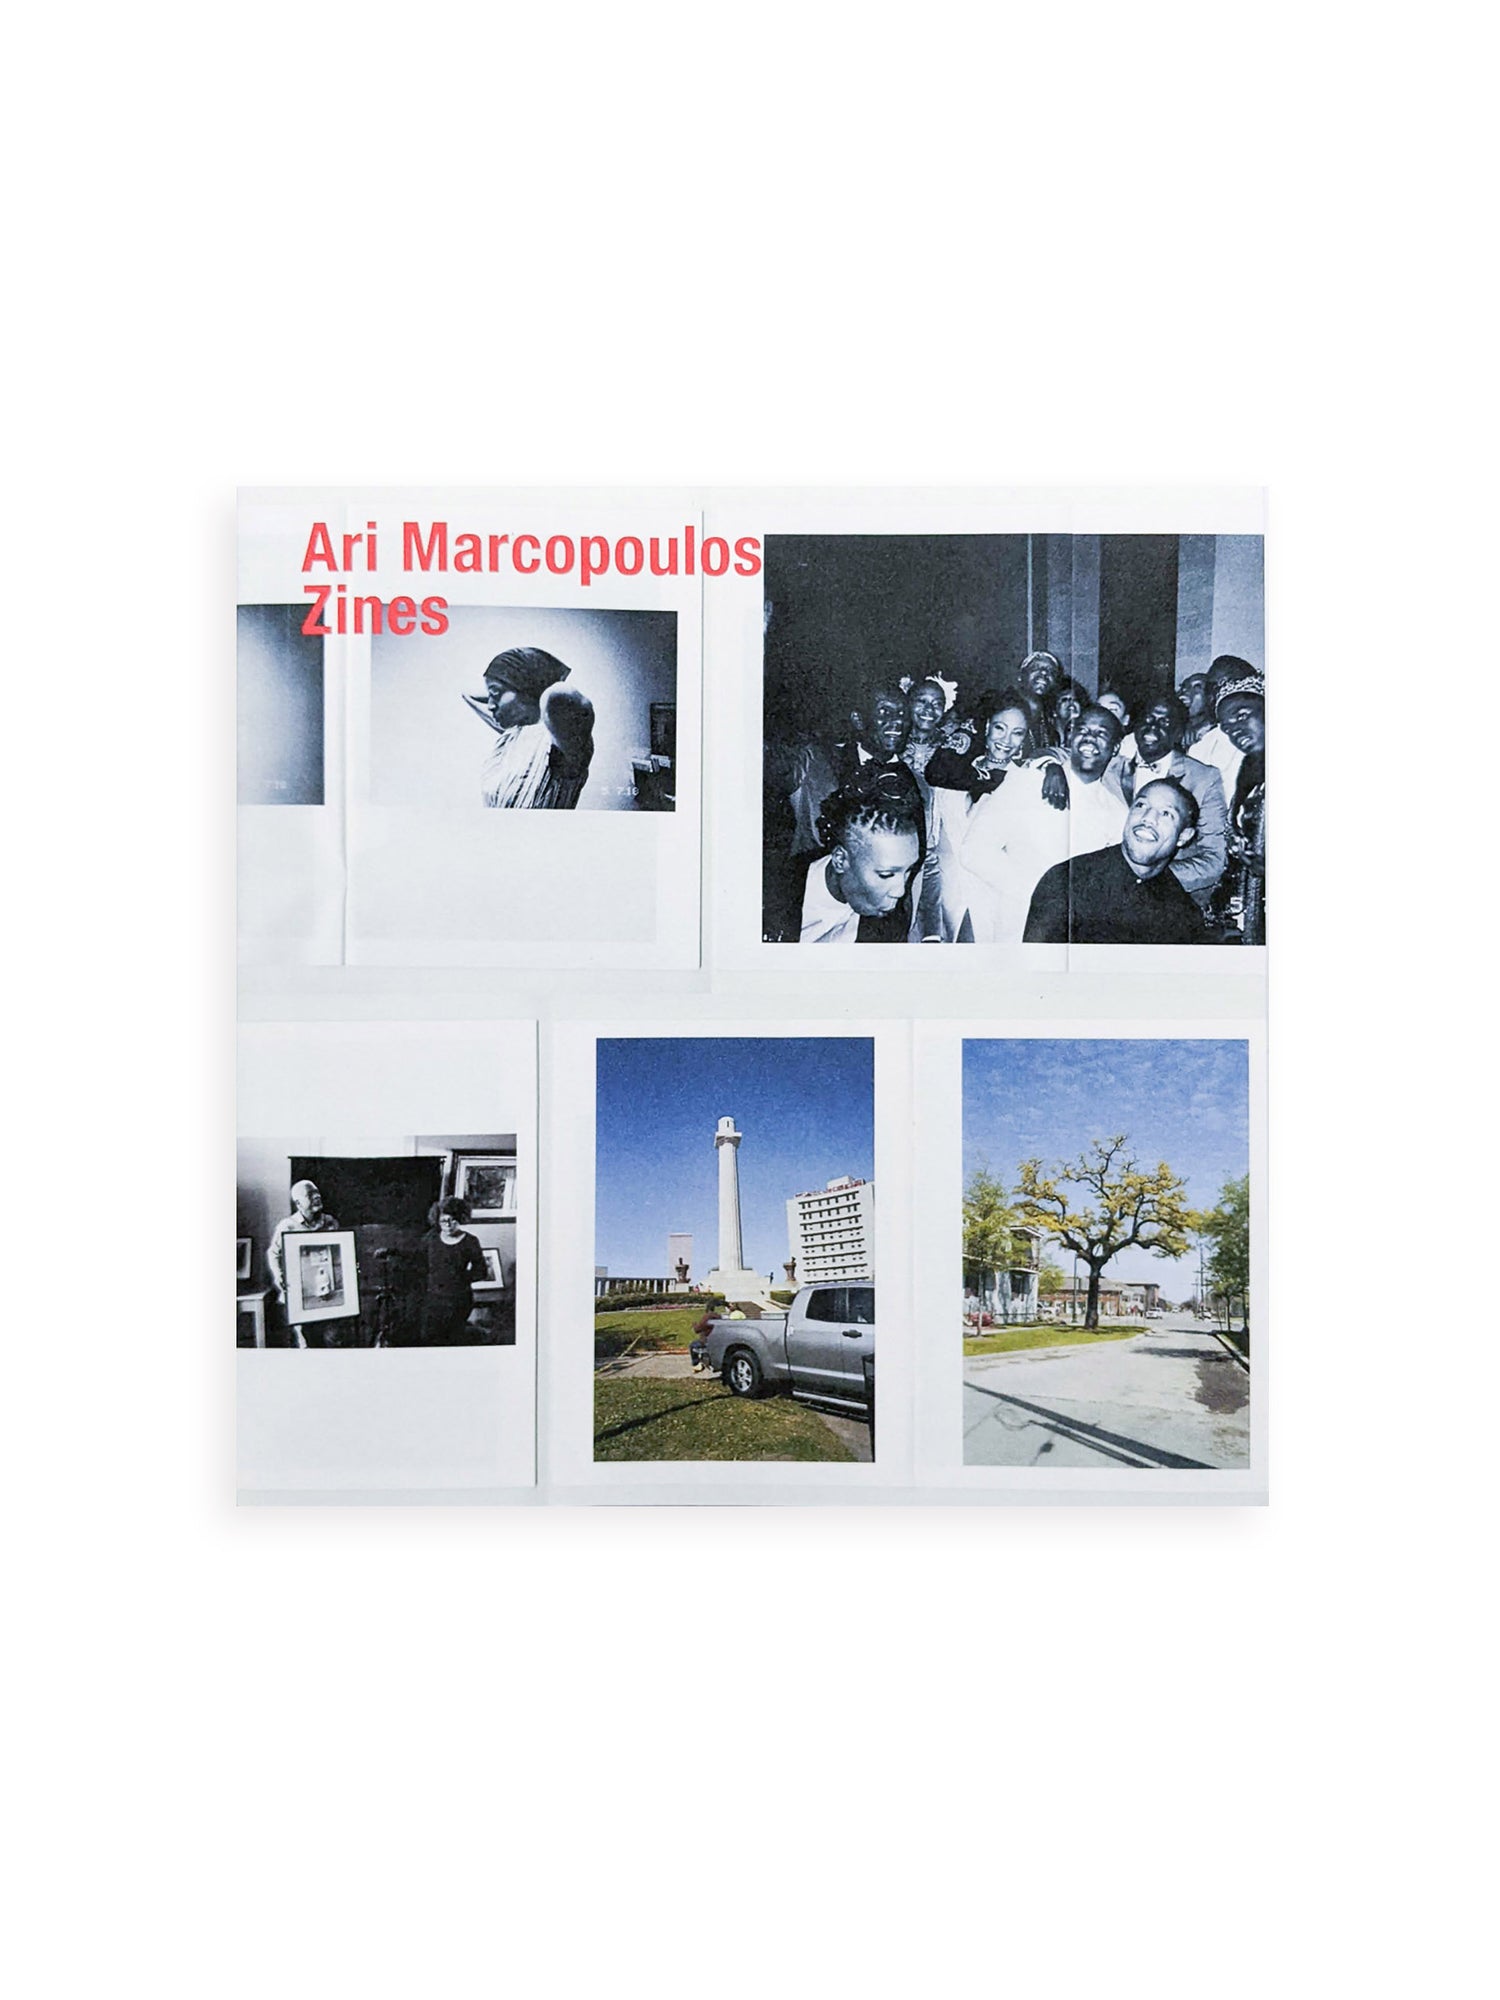 ARI MARCOPOULOS: ZINES / Ari Marcopoulos [SIGNED]